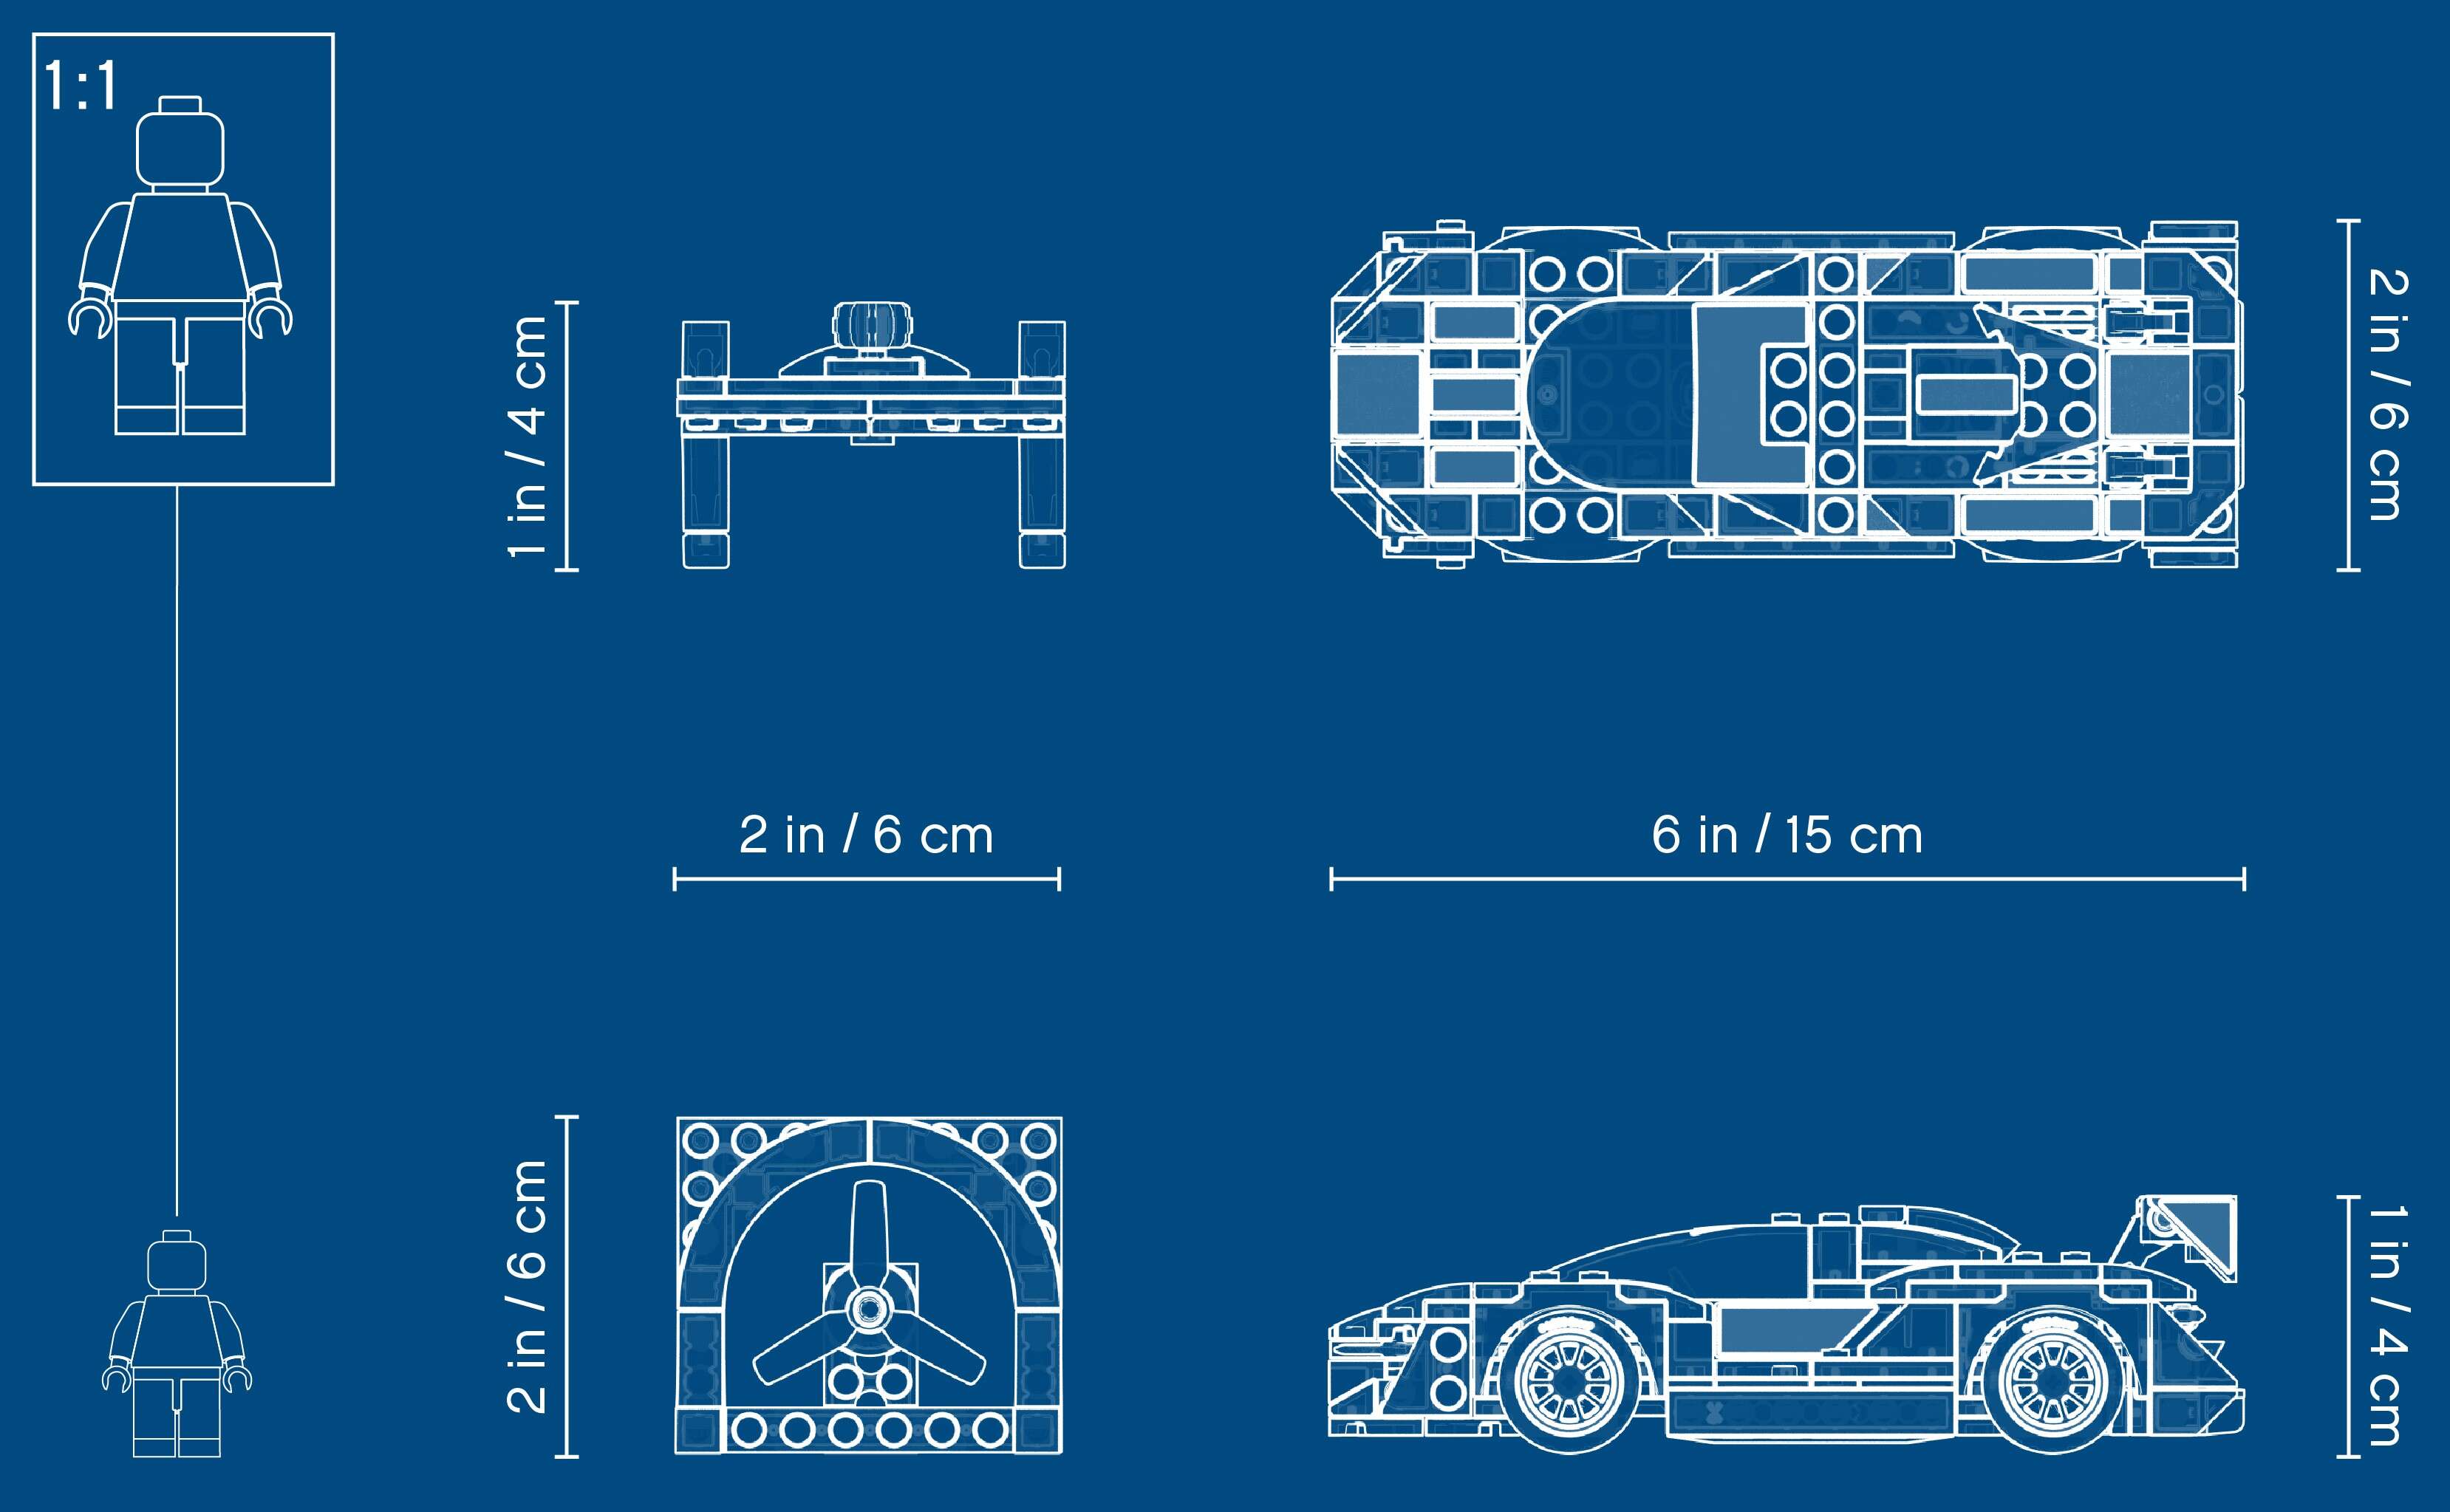 LEGO 75892 Speed Champions McLaren Senna Rennwagen + Rennfahrer-Minifigur